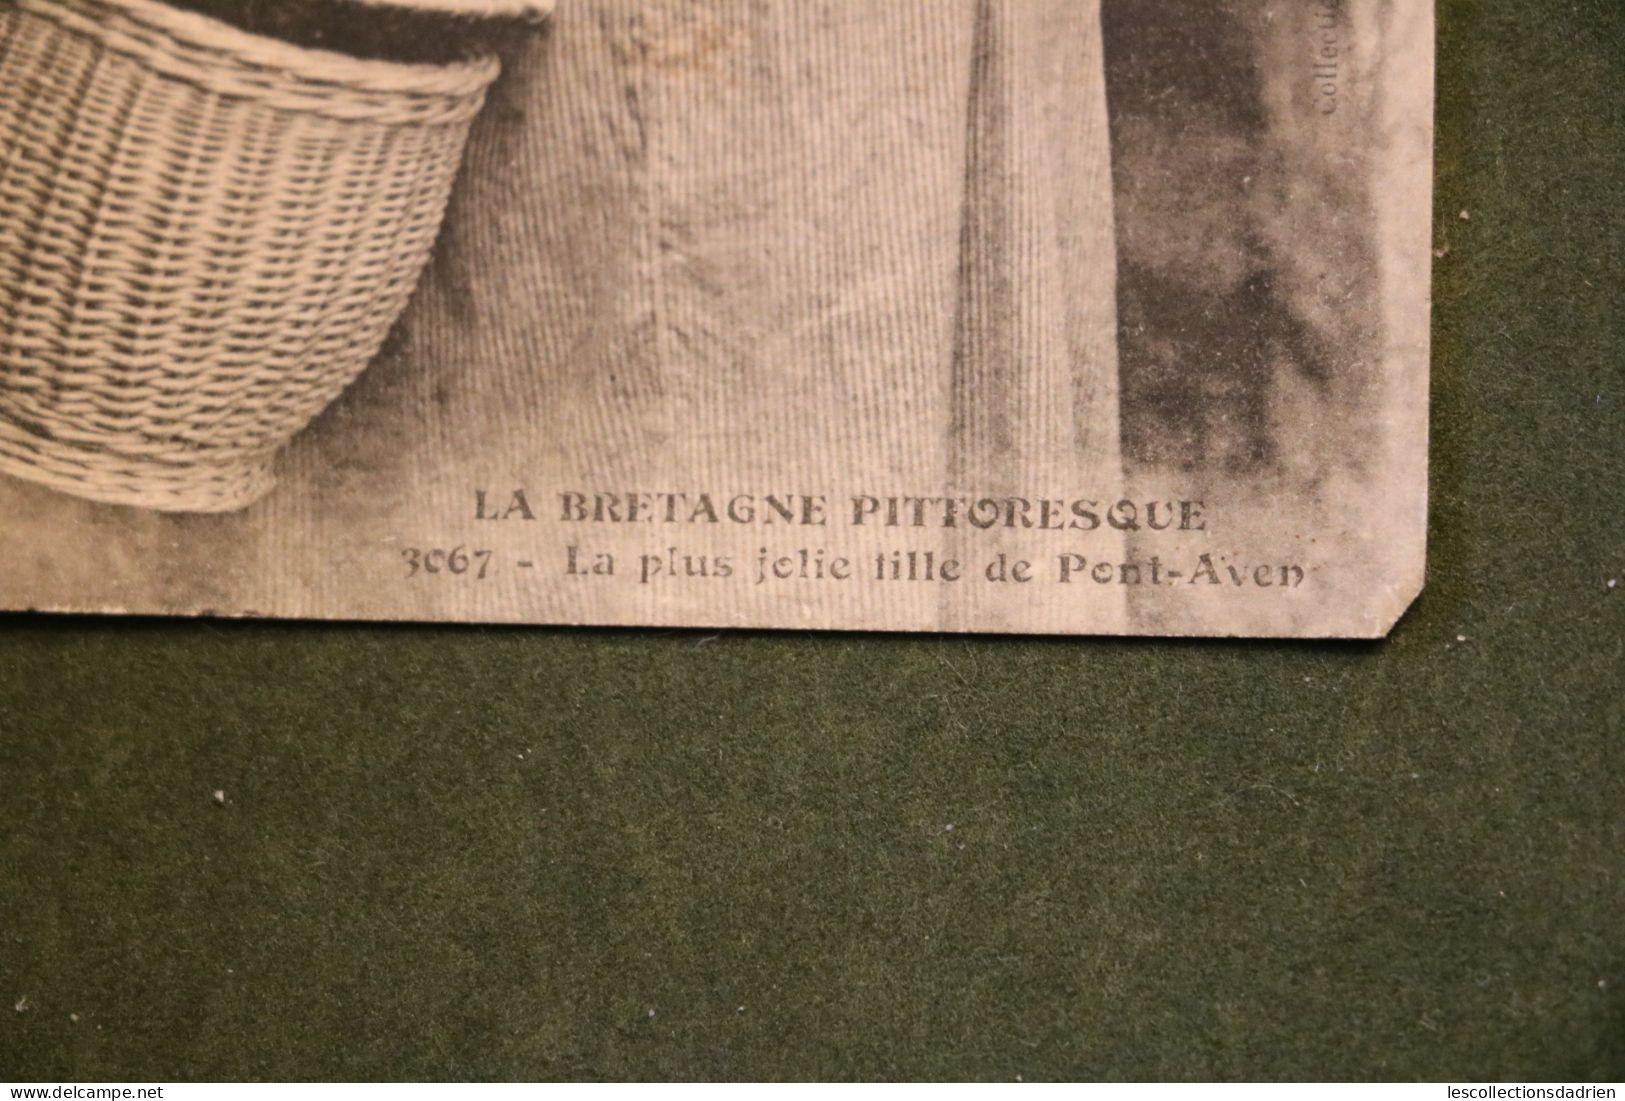 Carte Postale La Bretagne Pittoresque - La Plus Belle Fille De Pont-Aven - Cachet D'arrivée 5555 Bièvre - Humour